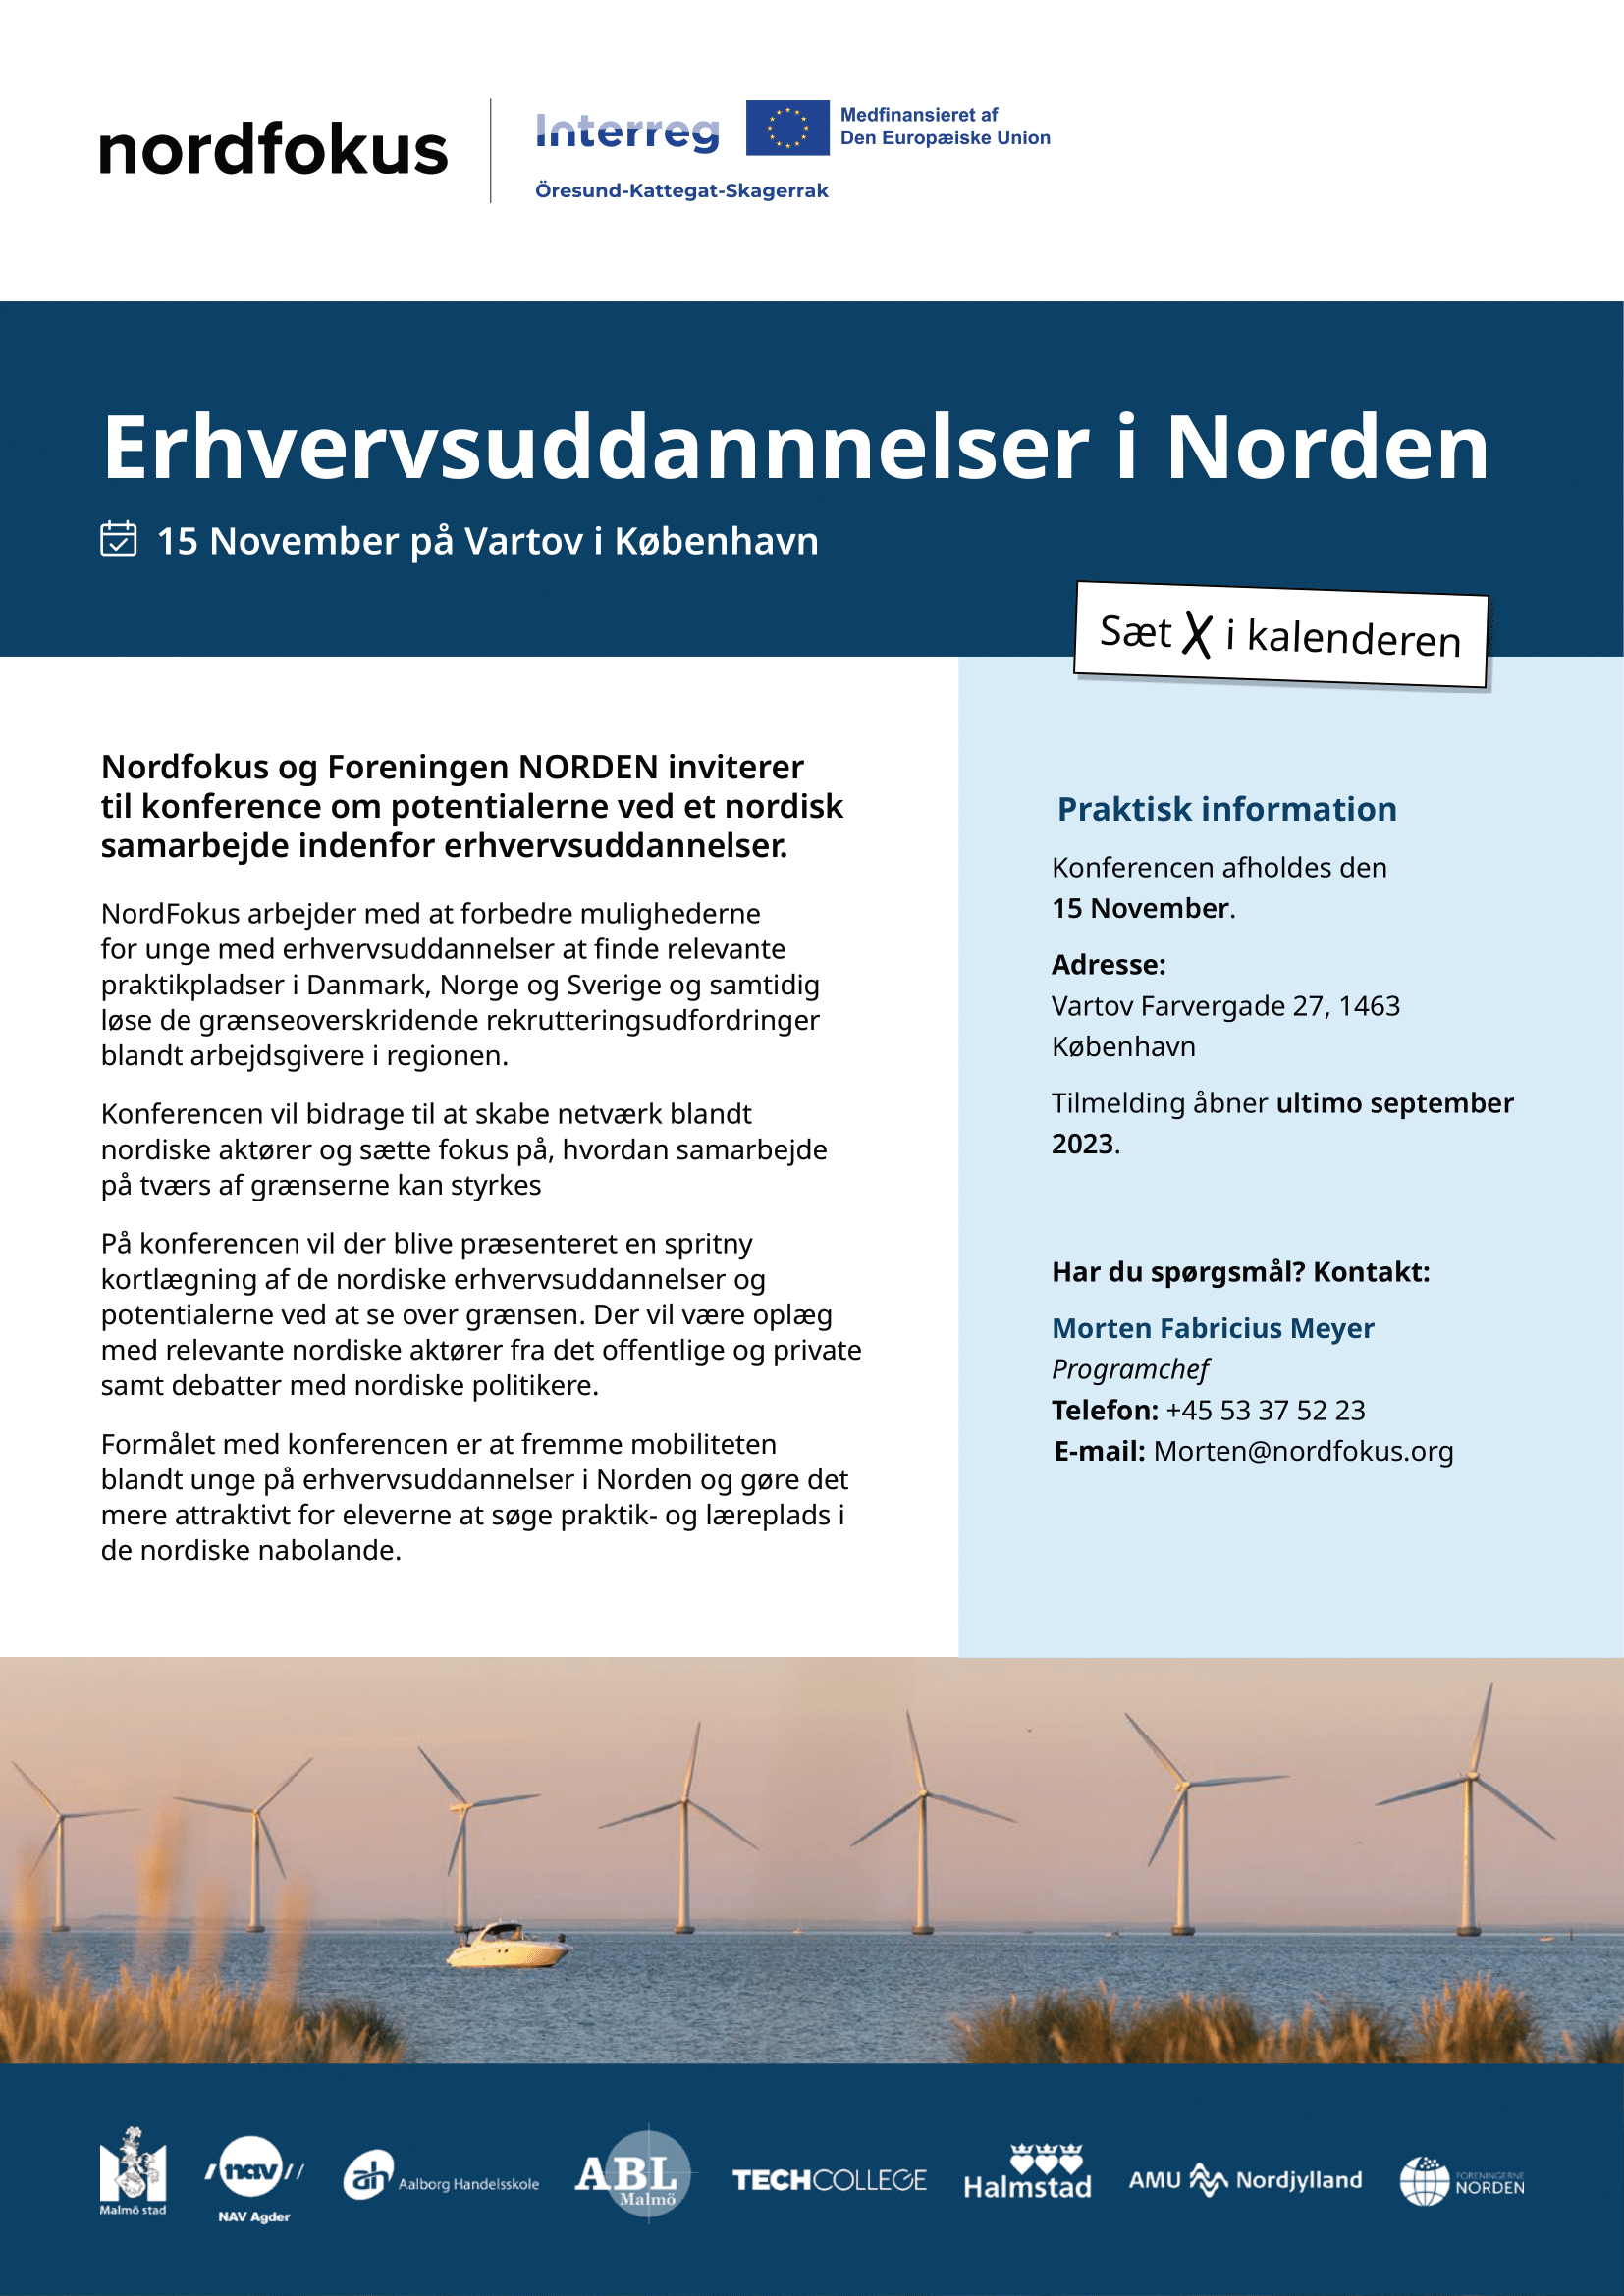 Nordfokus arrangerar konferens om yrkesutbildningar och praktik i Norden